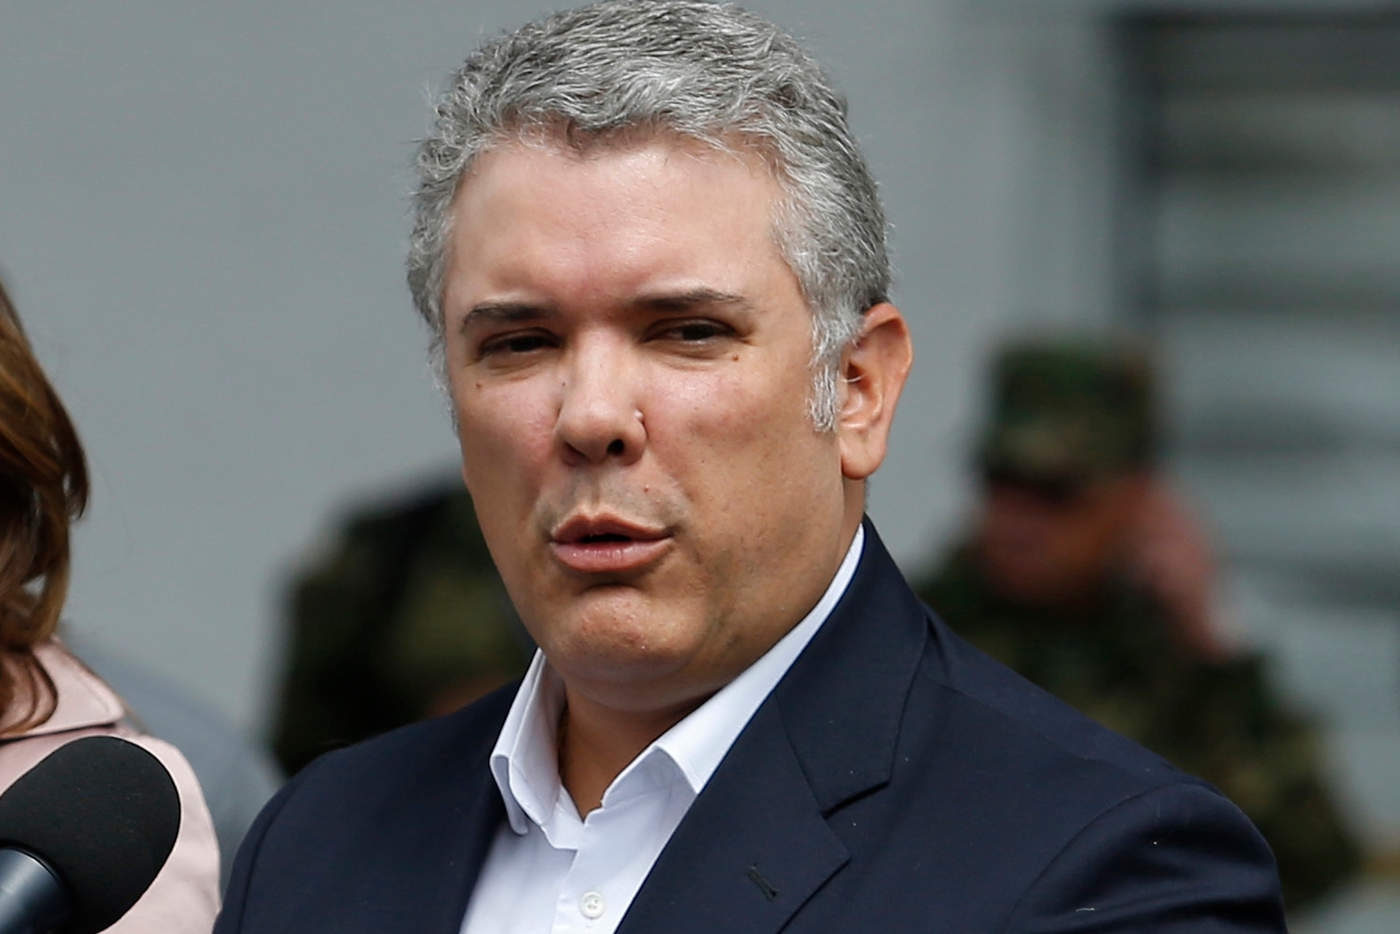 'He ordenado el levantamiento de la suspensión de las órdenes de captura a los 10 miembros del ELN que integraban la delegación de este grupo en Cuba', señaló Duque. (ARCHIVO)